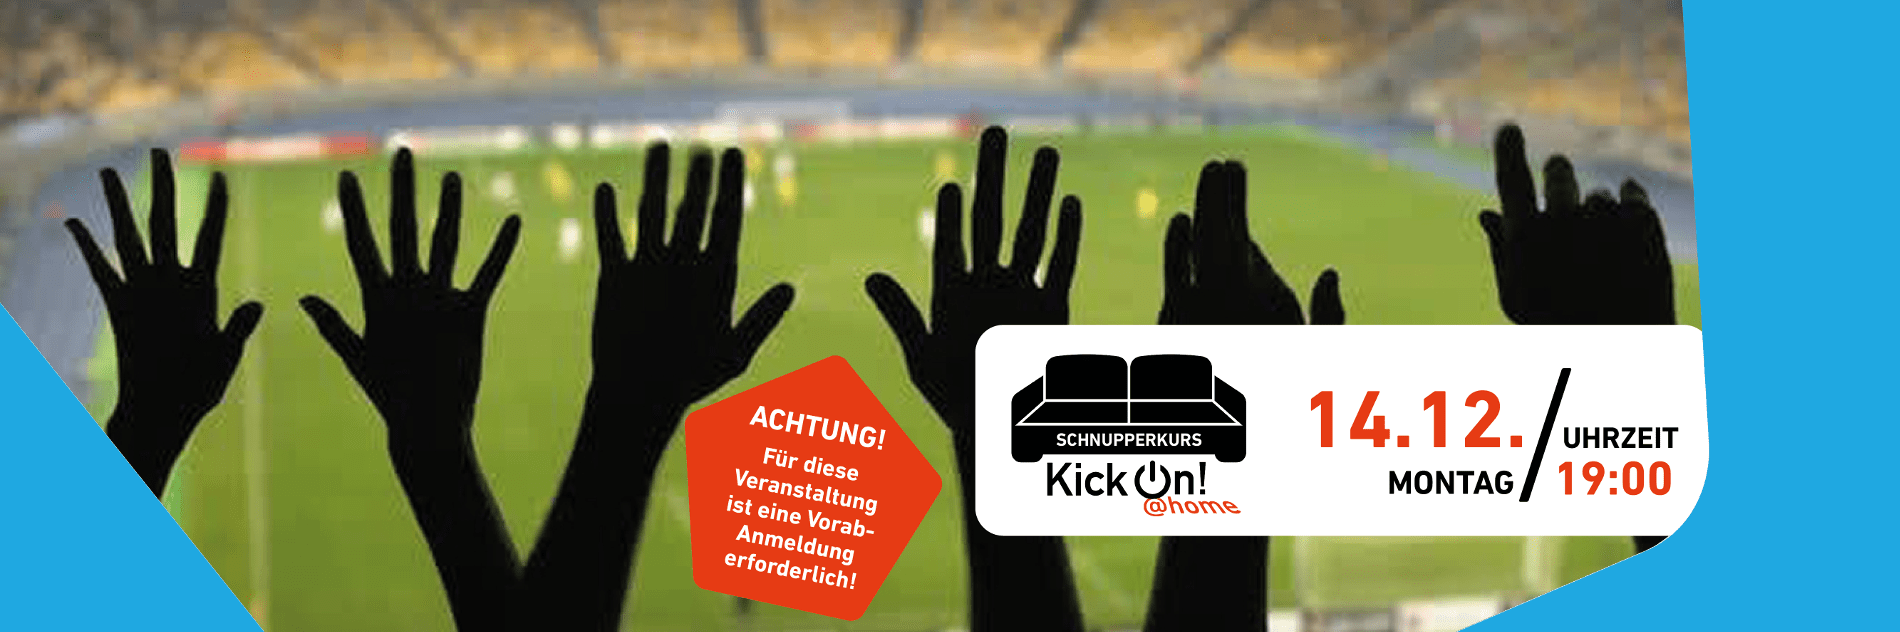 Mehrere Hände sind in die Höhe gestreckt, dahinter ist ein Fußballfeld zu sehen. Rechts ein weißer Infokasten mit den Daten der Veranstaltung und dem Logo der Reihe KickOn Home.